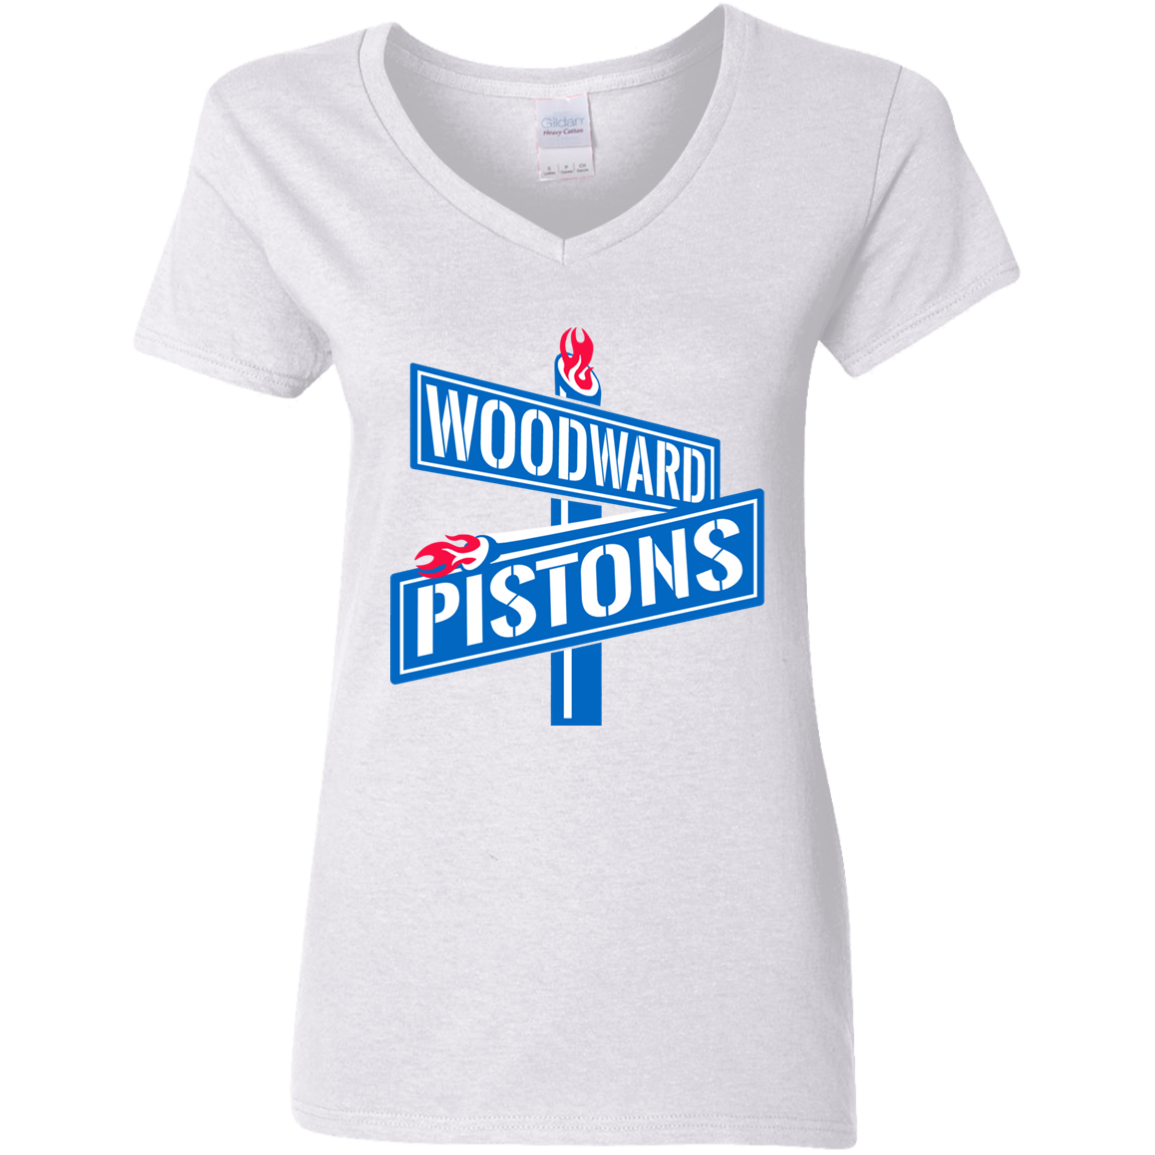 WOODWARD PISTONS Women's Tee